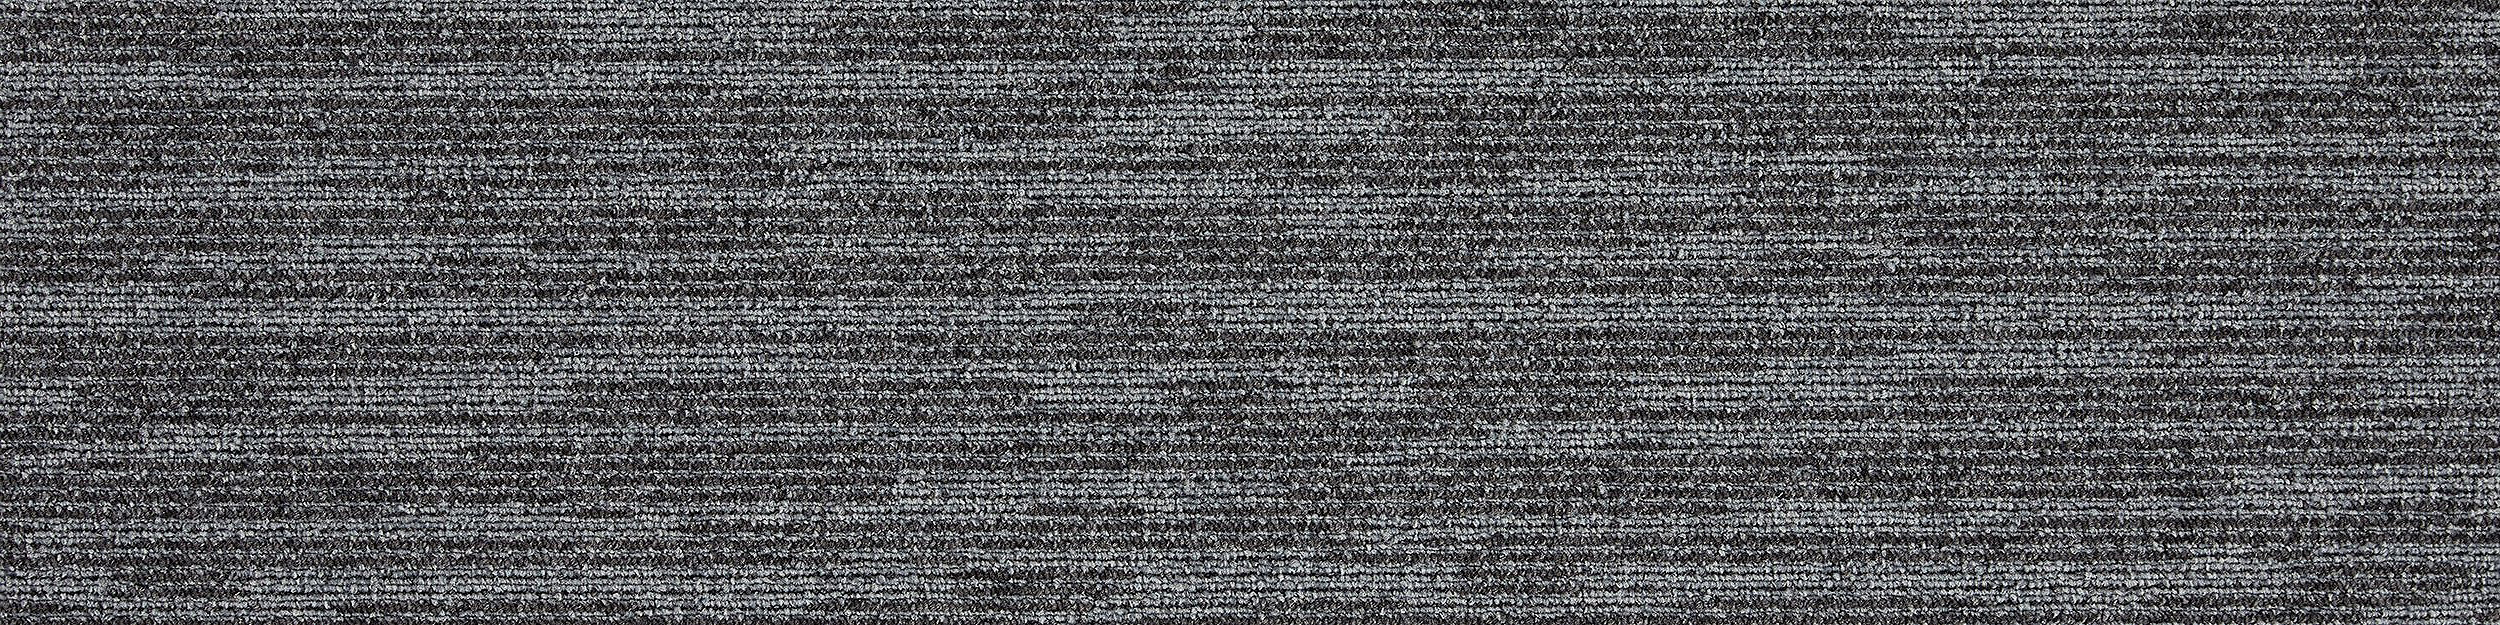 Works Balance Carpet Tile In Pewter afbeeldingnummer 7